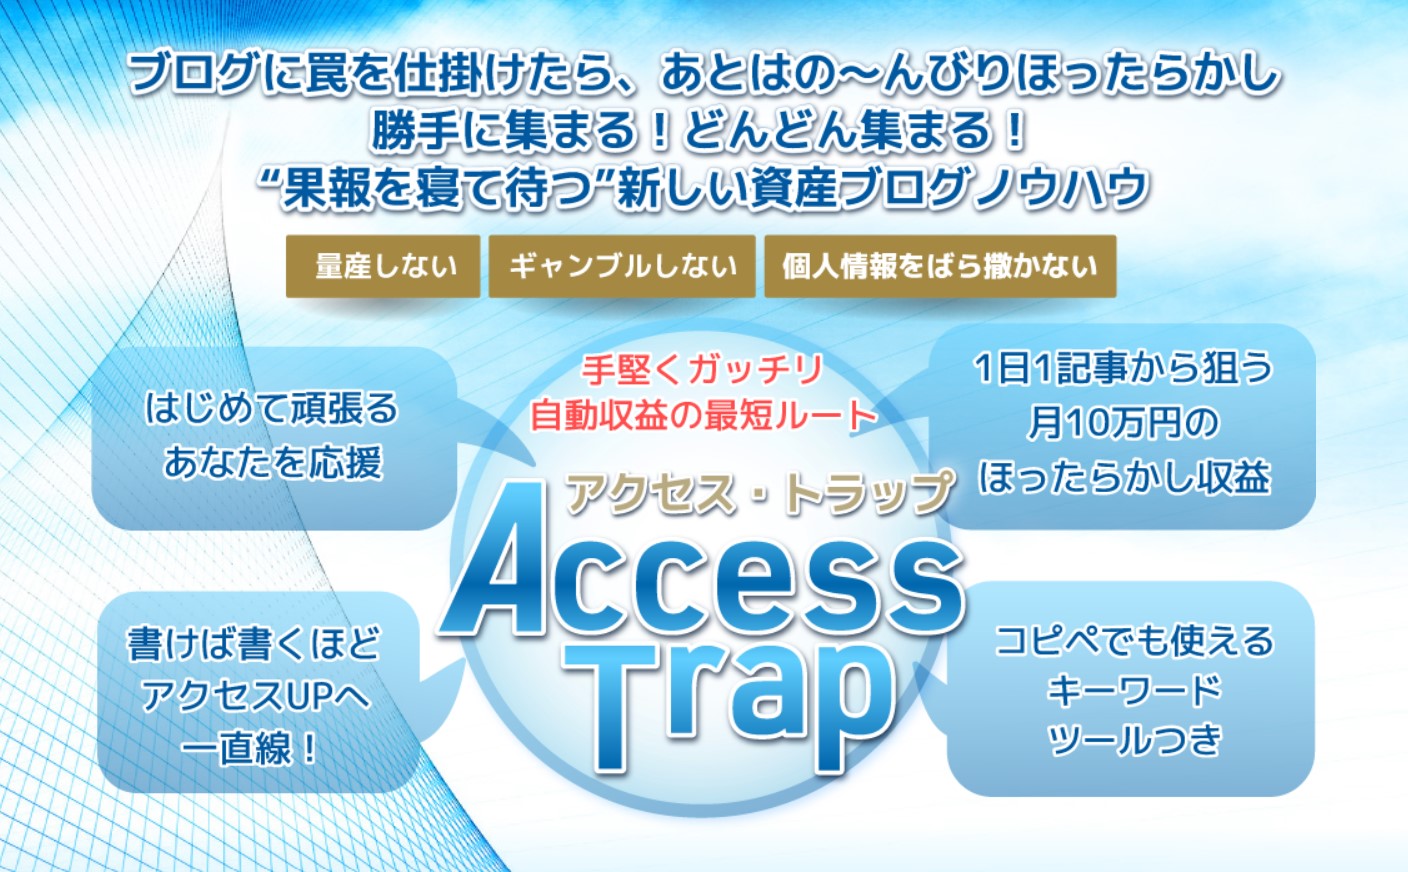 Access Trap